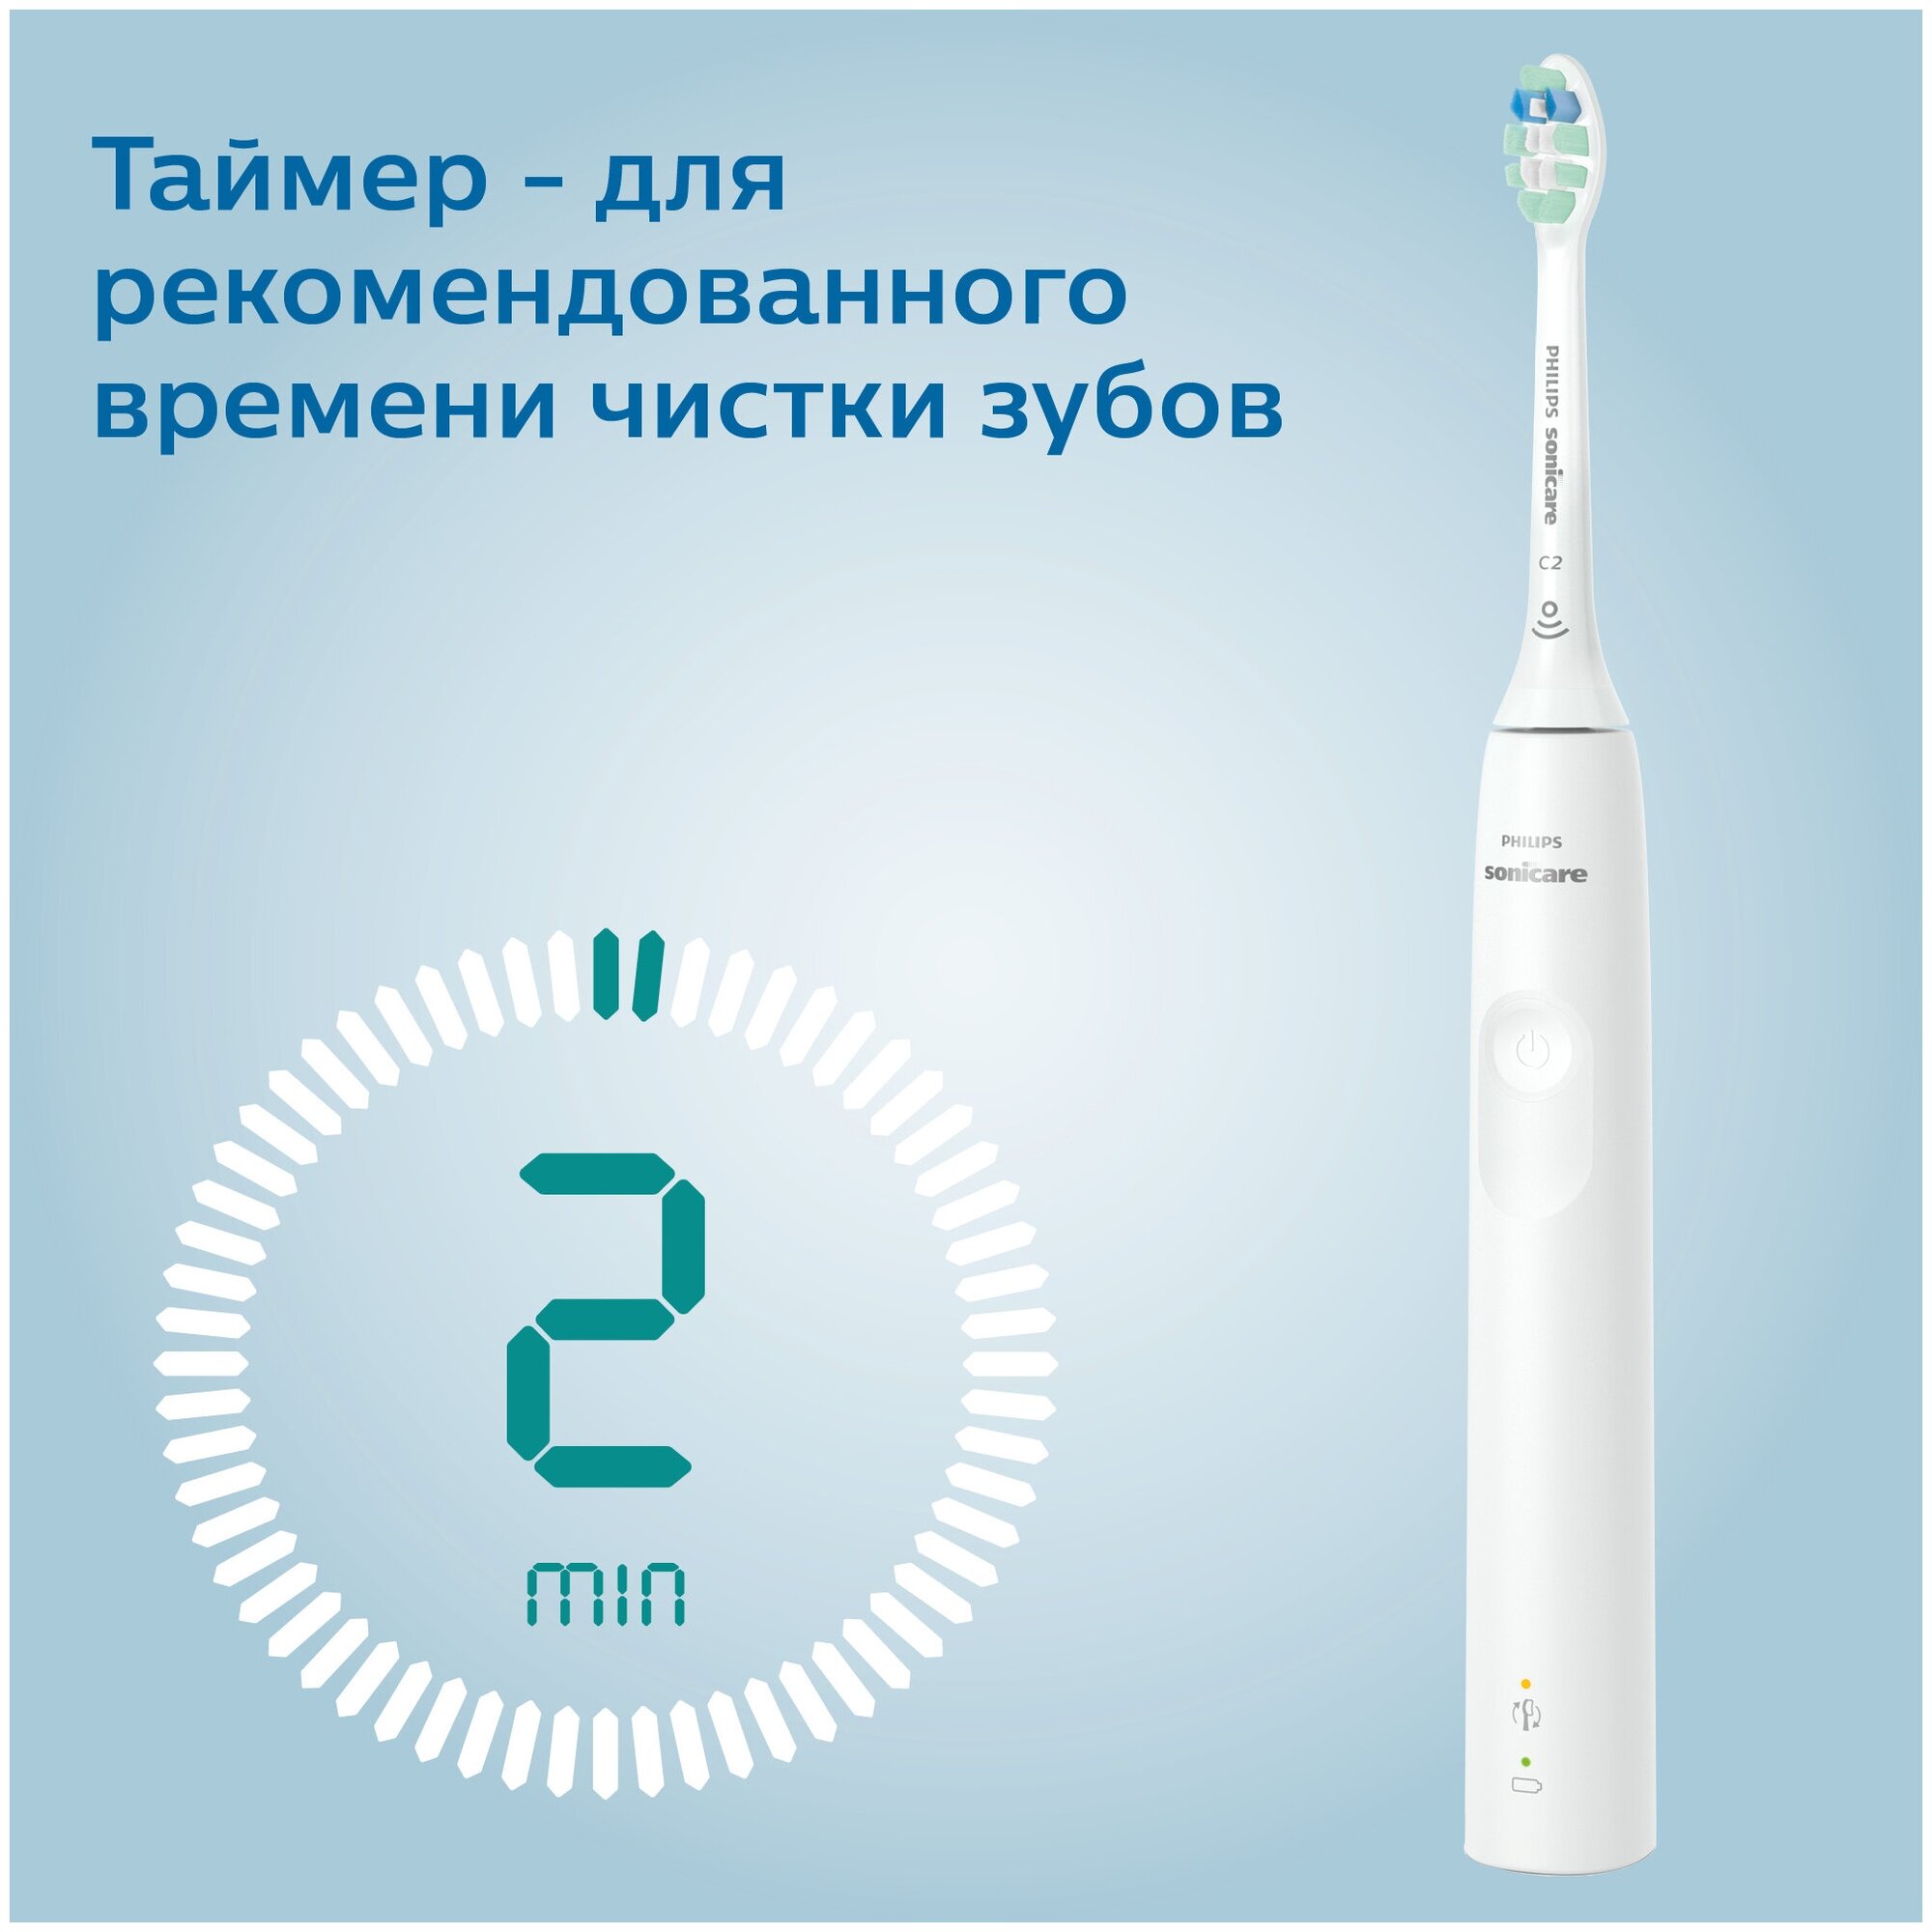 Электрическая зубная щетка Philips - фото №5